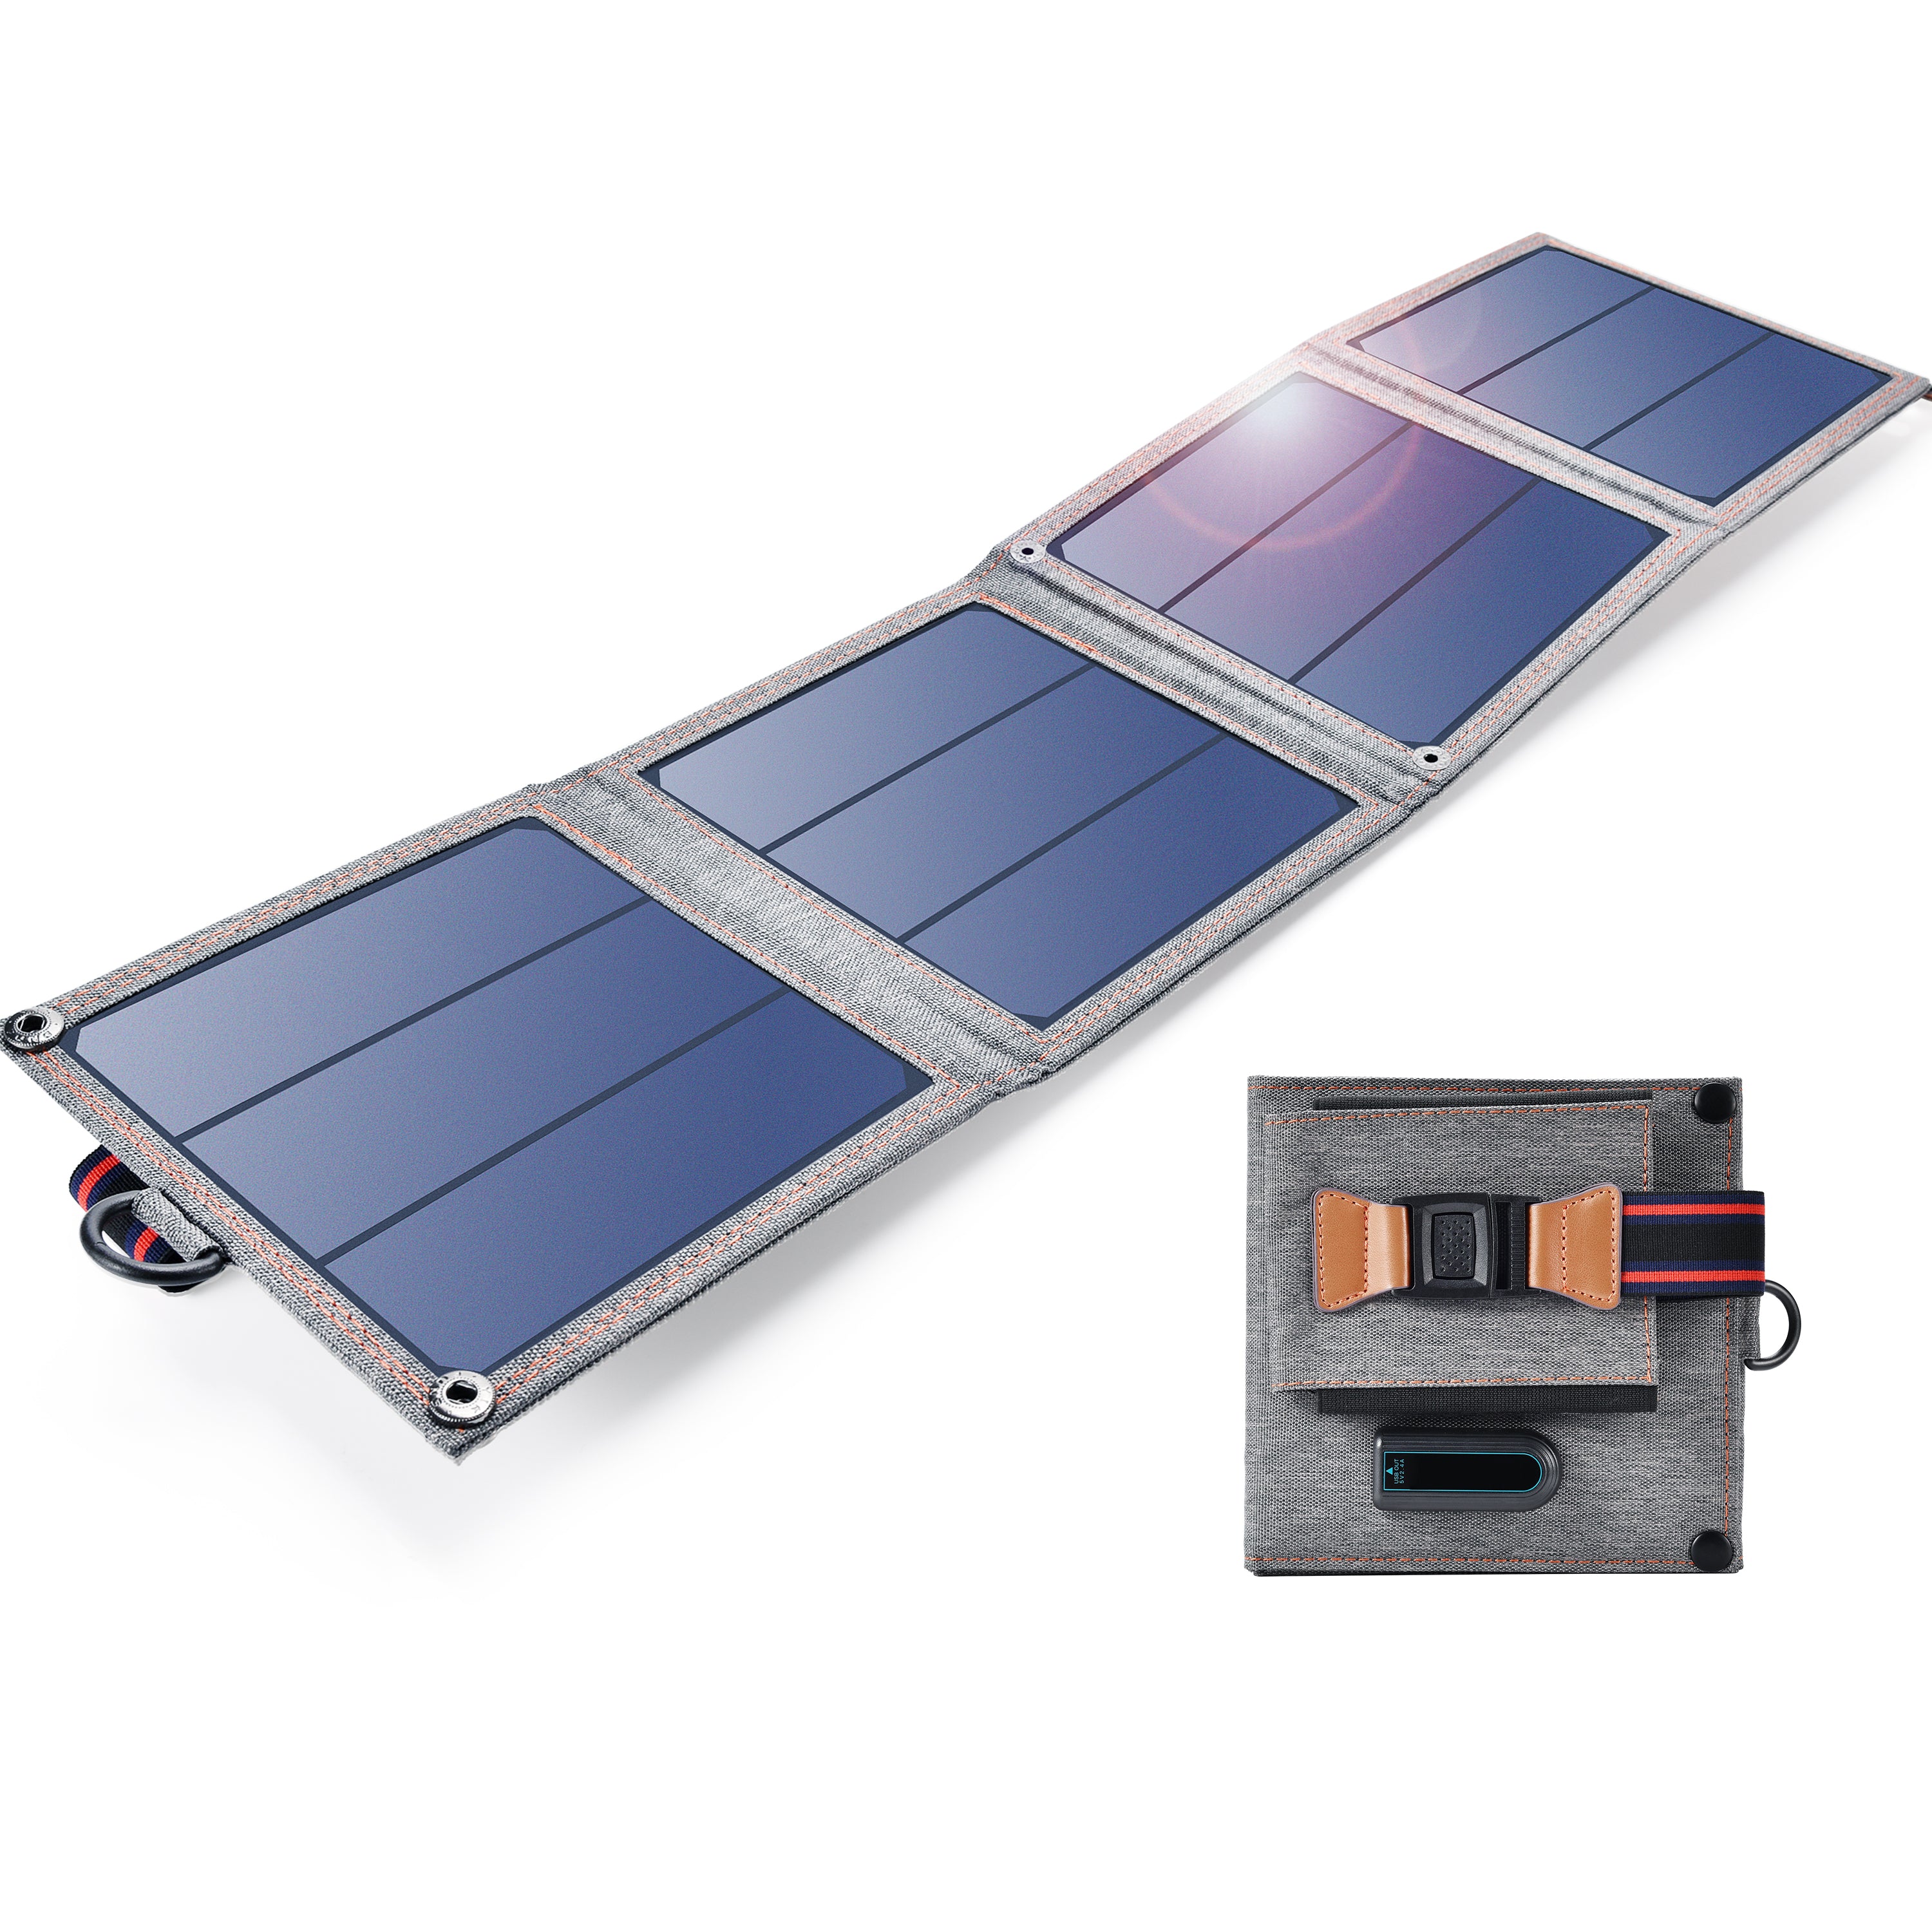 Chargeur solaire pliable USB 14W SC004 Choetech